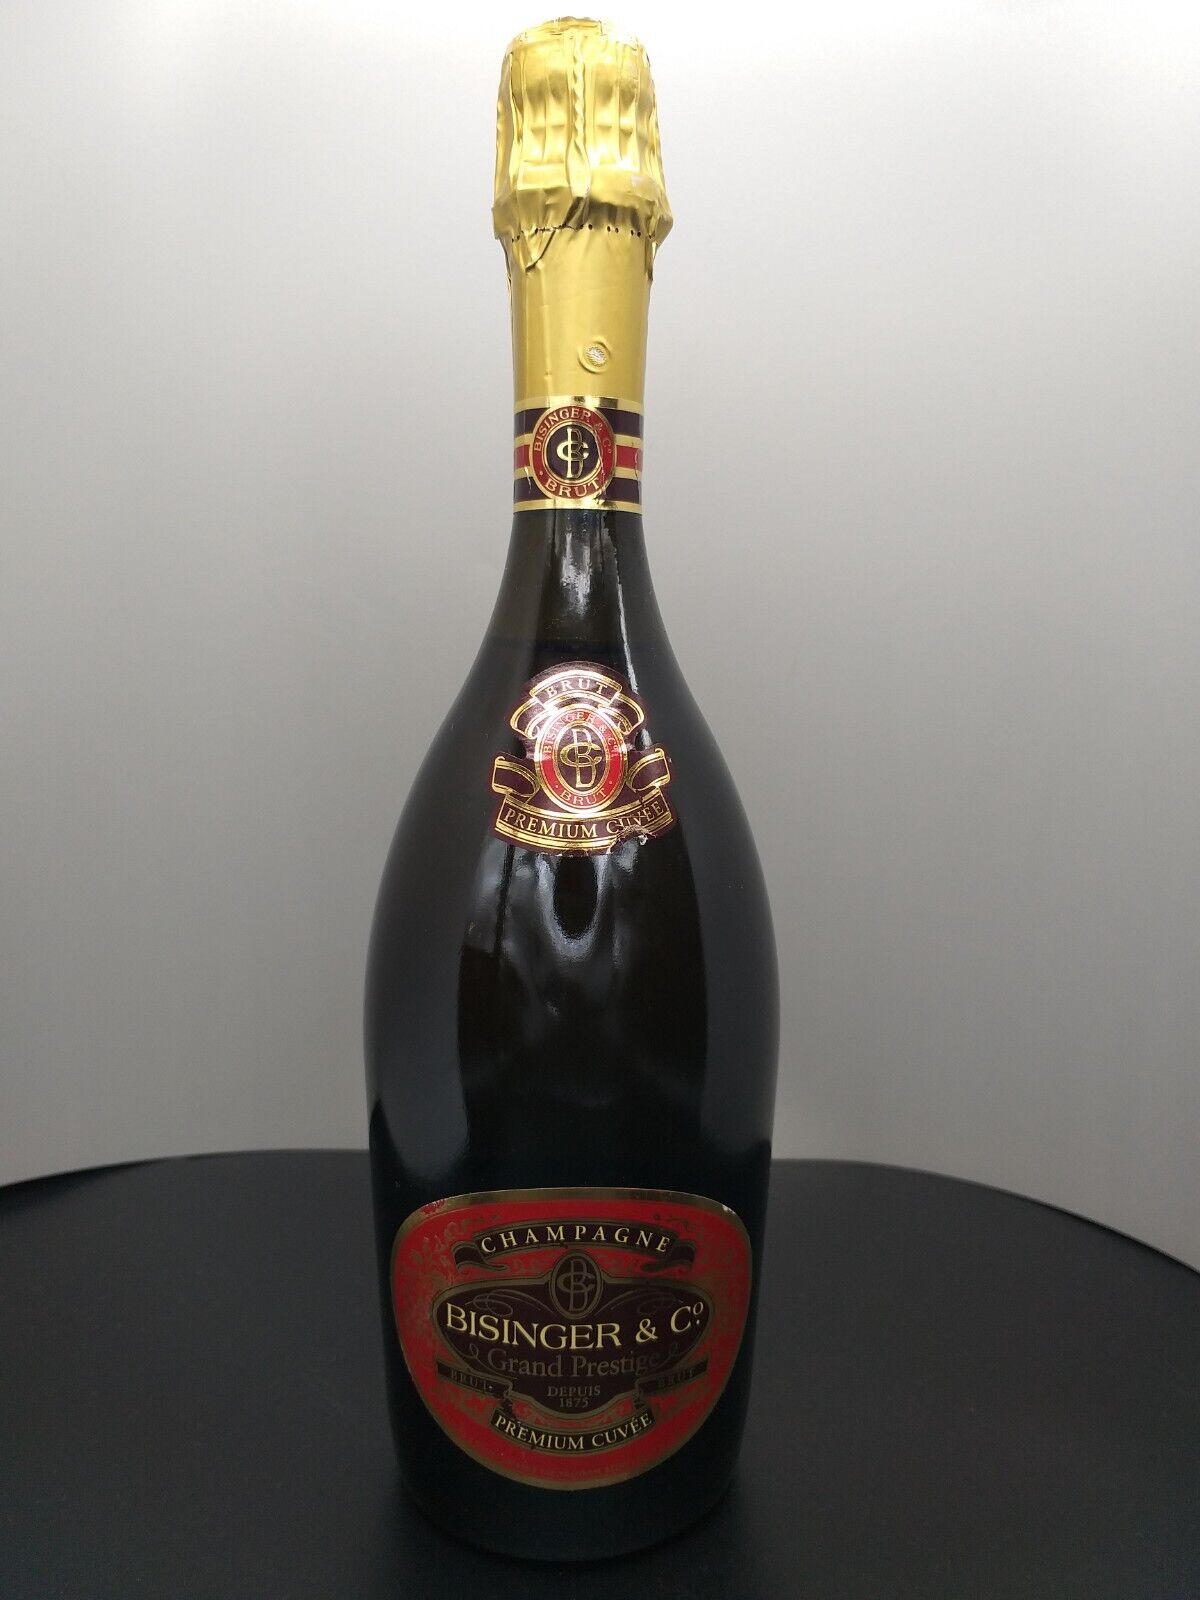 Bissinger Premium Cuvée Brut Champagner 0 75 Liter online kaufen | eBay